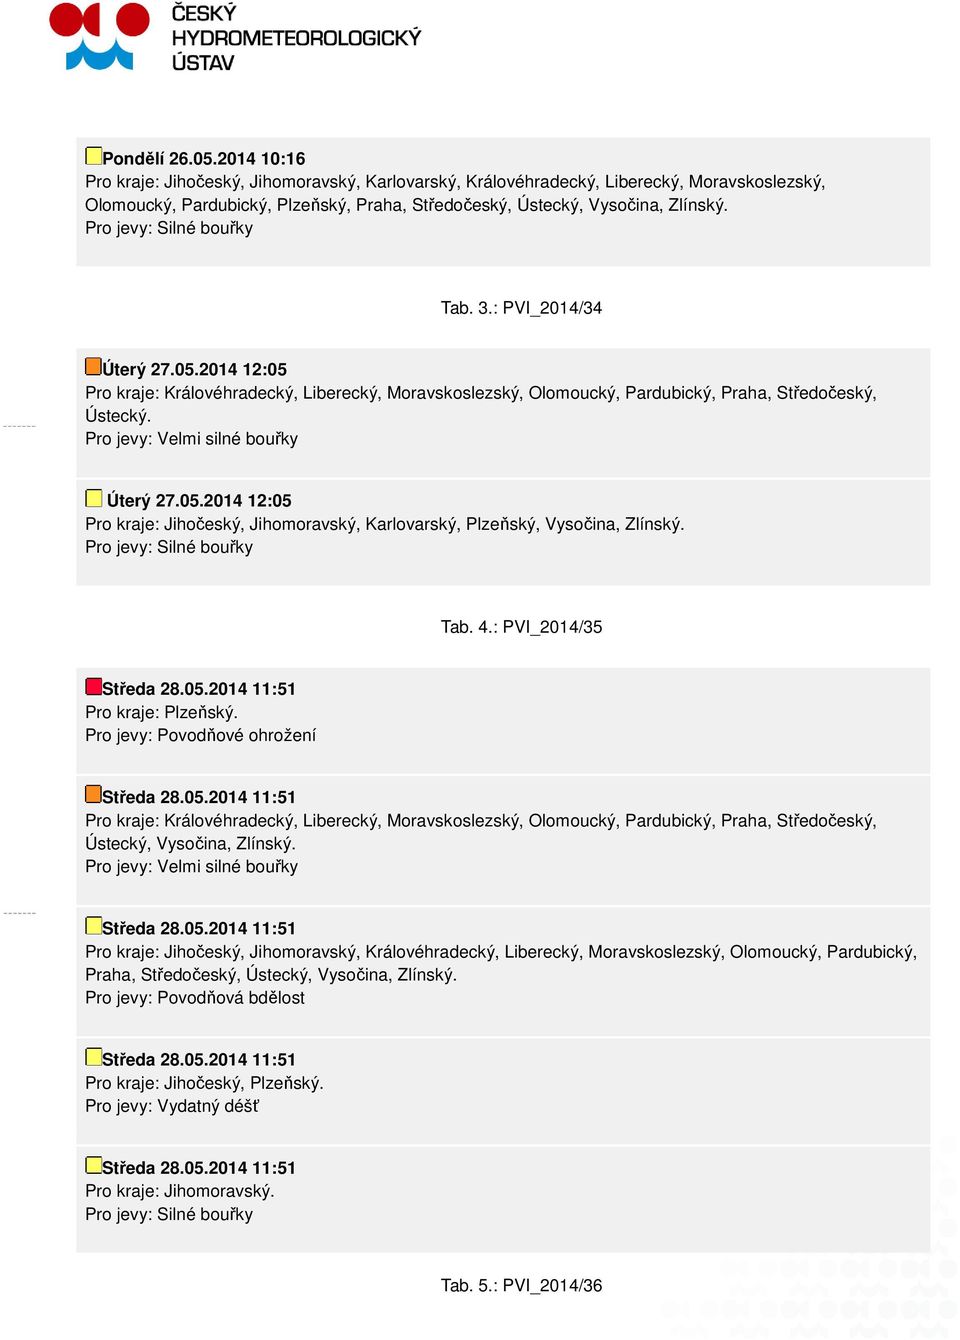 Pro jevy: Velmi silné bouřky Úterý 27.05.2014 12:05 Pro kraje: Jihočeský, Jihomoravský, Karlovarský, Plzeňský, Vysočina, Zlínský. Pro jevy: Silné bouřky Tab. 4.: PVI_2014/35 Pro kraje: Plzeňský.